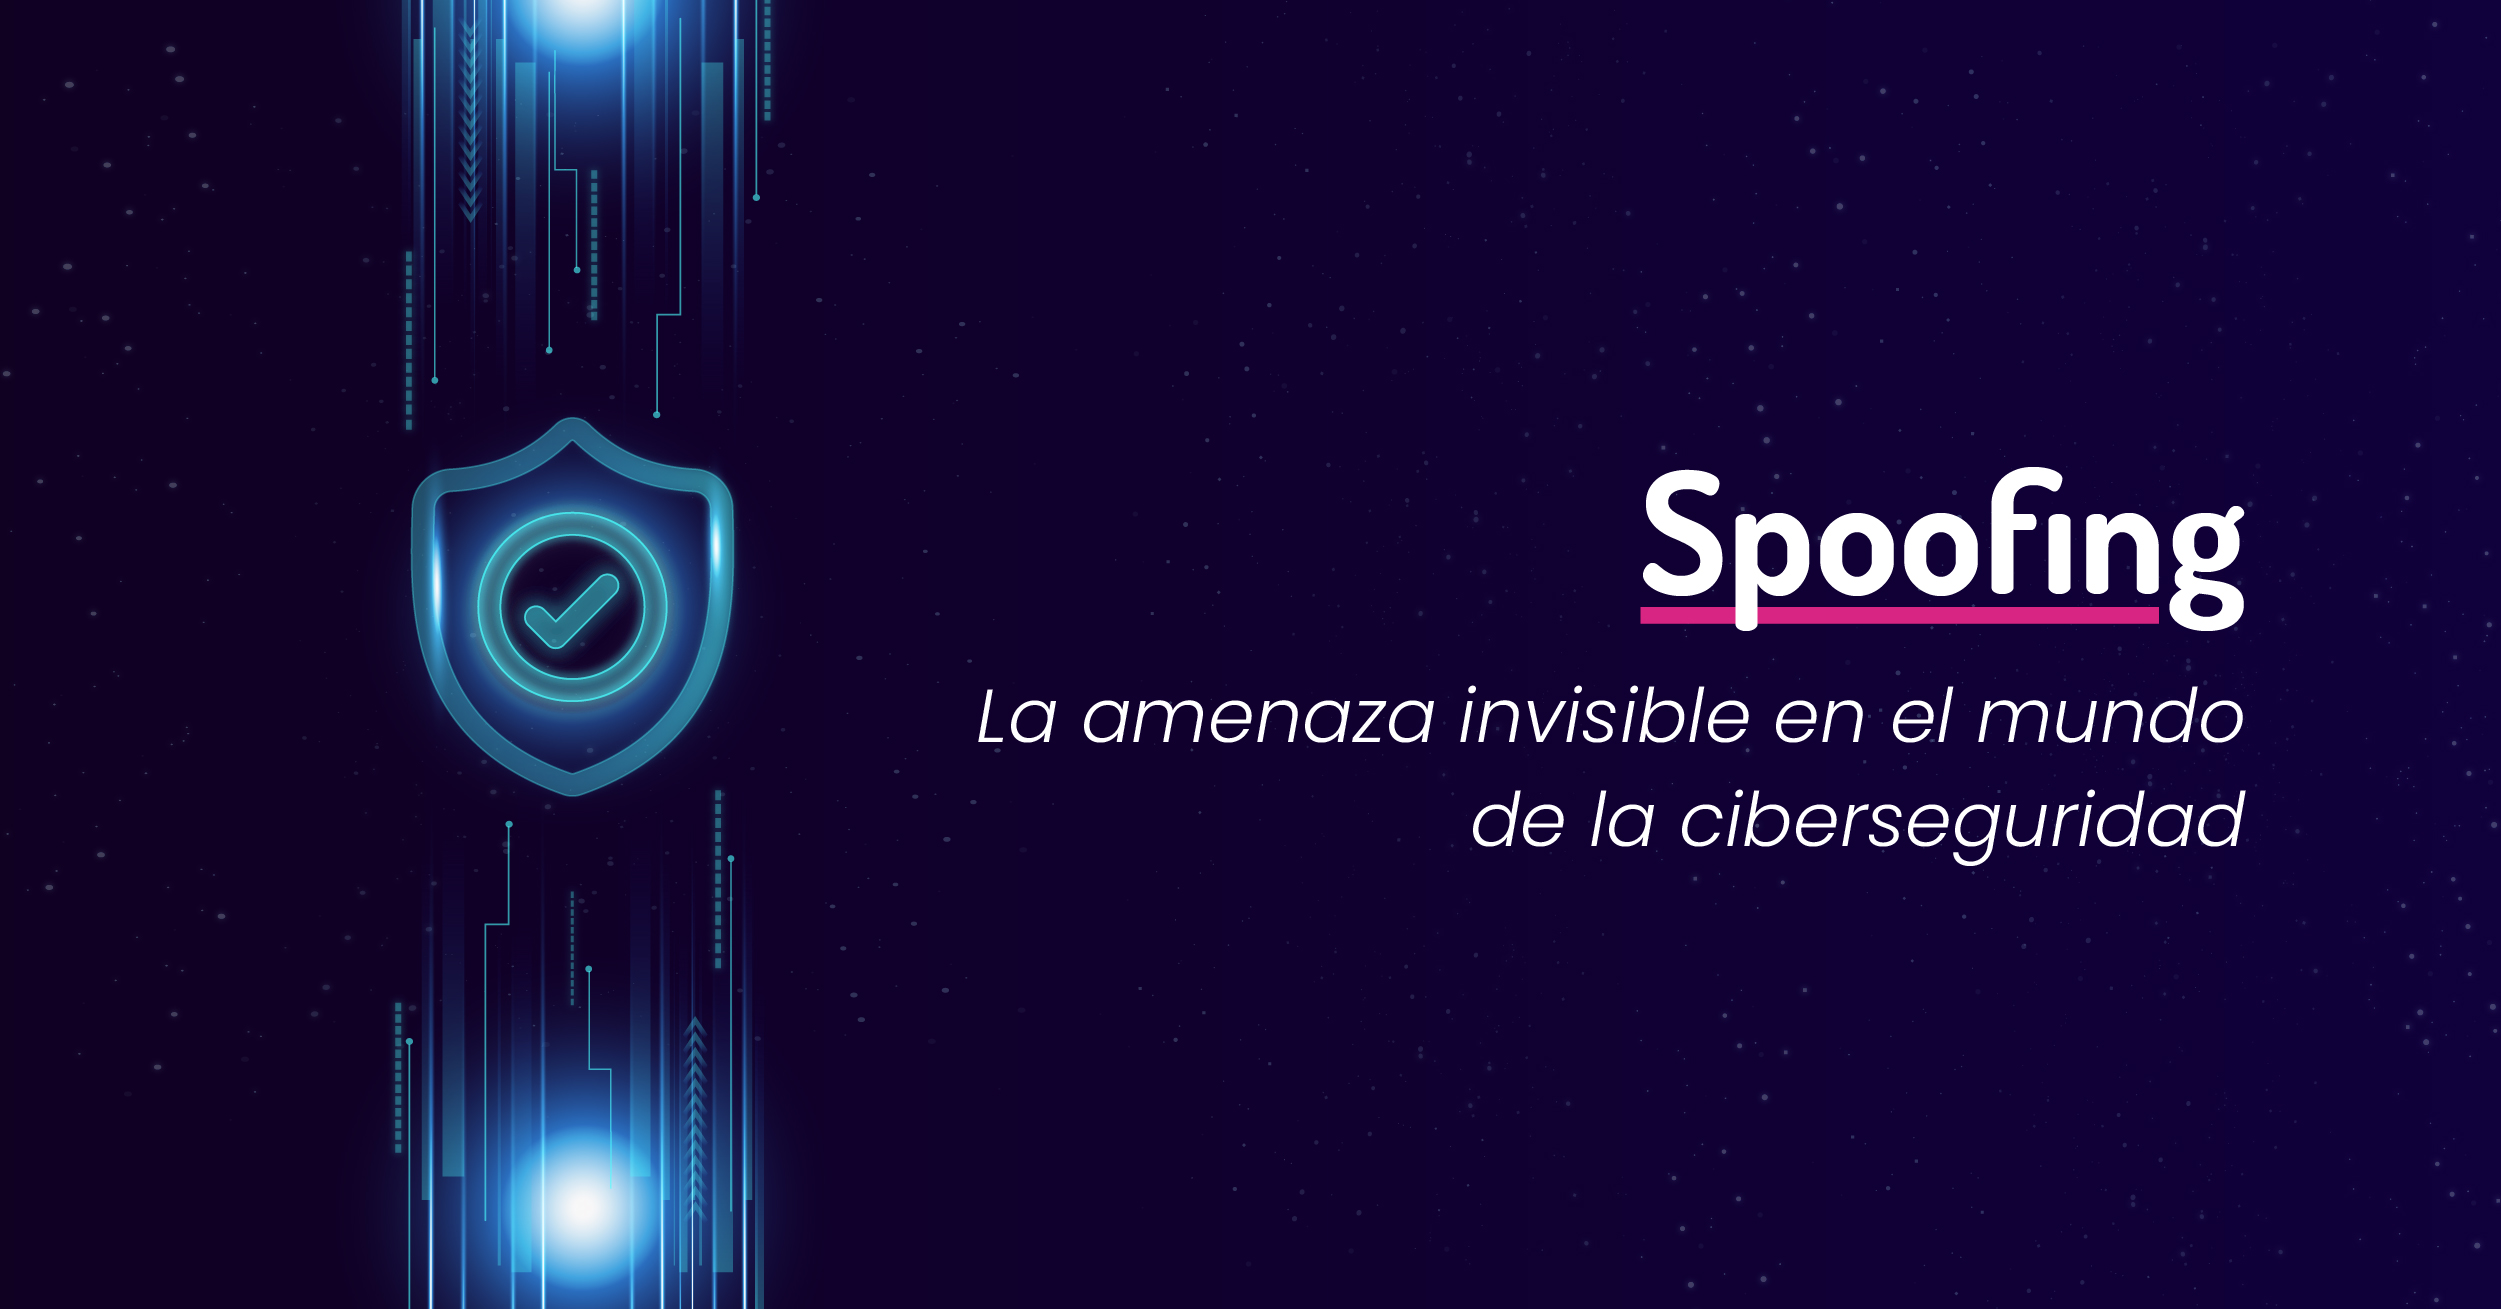 Spoofing: La amenaza invisible en el mundo de la ciberseguridad